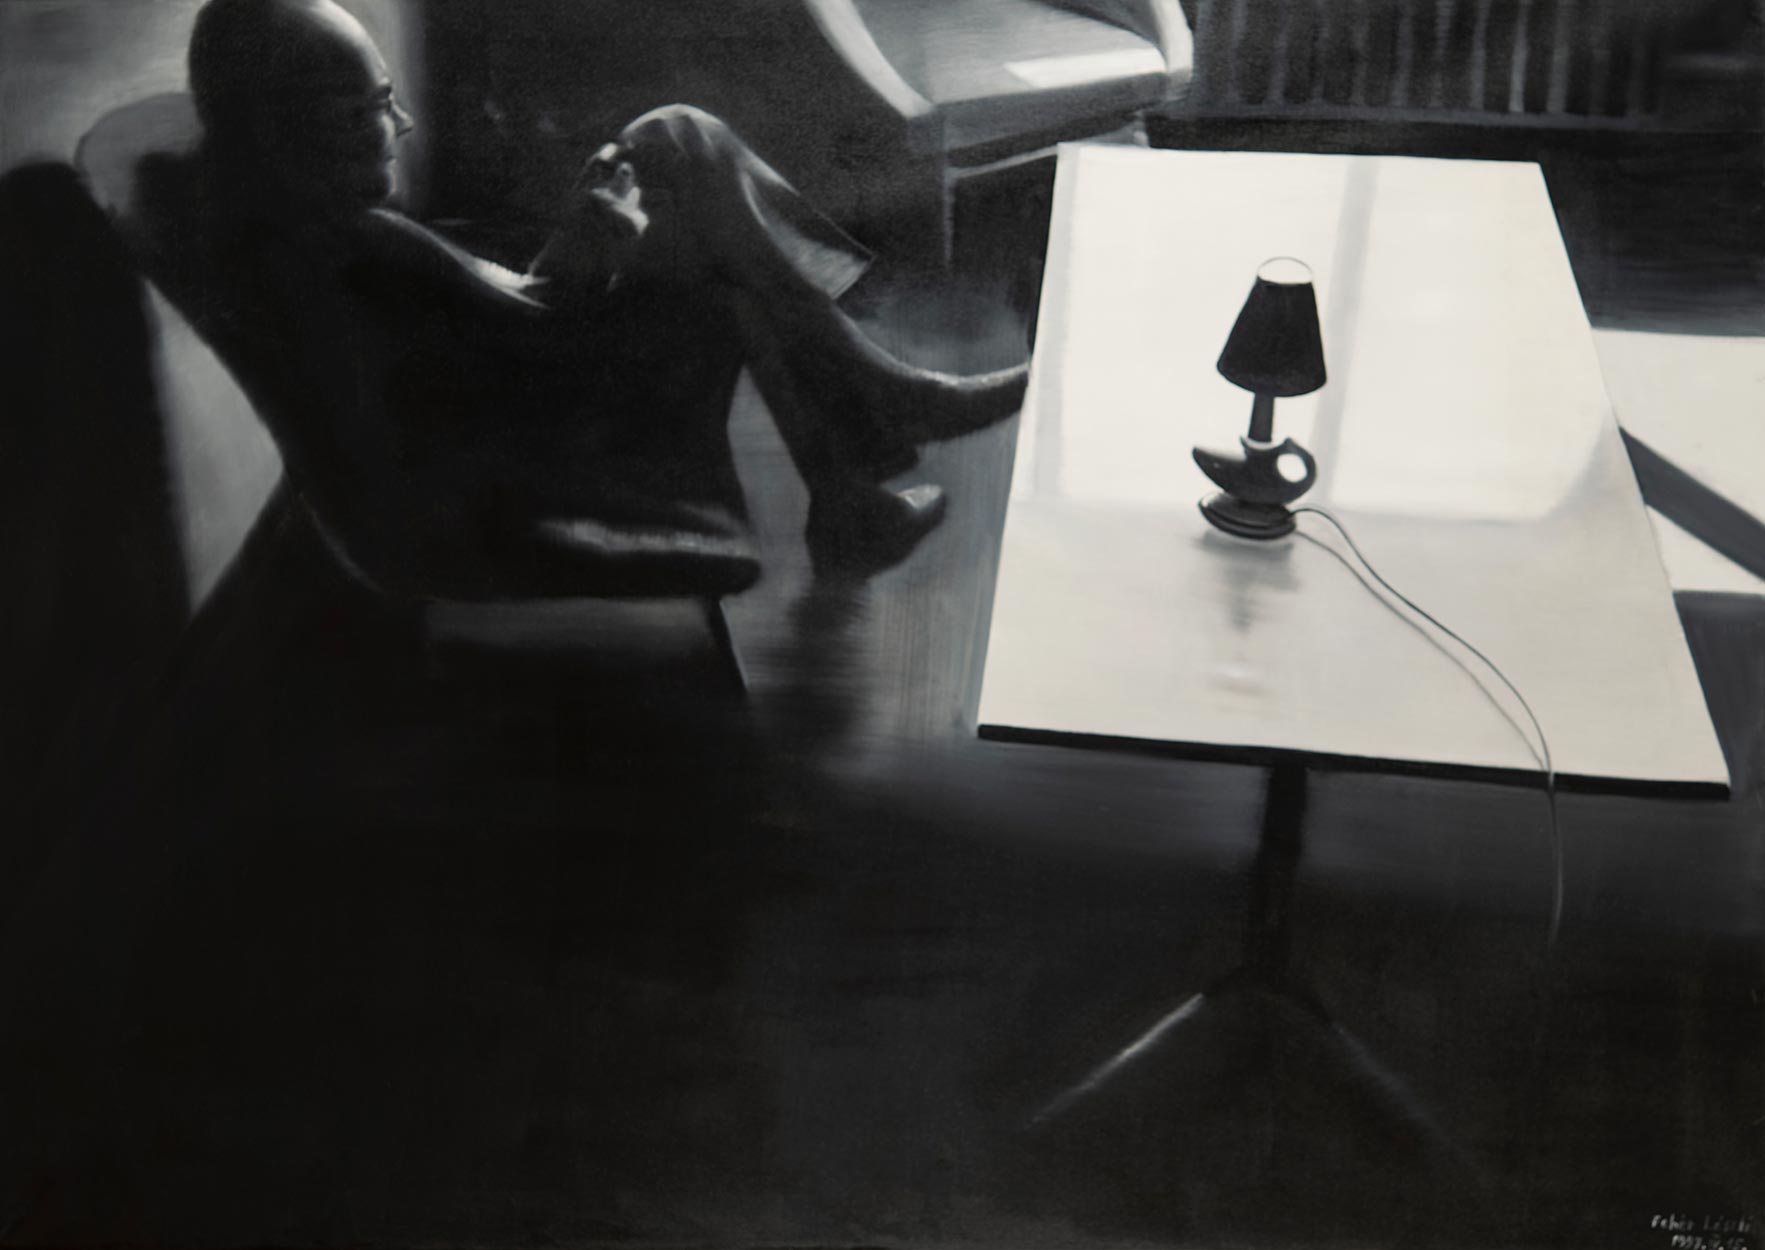 Fehér László (1953-) Daddy in the Chair, 1997